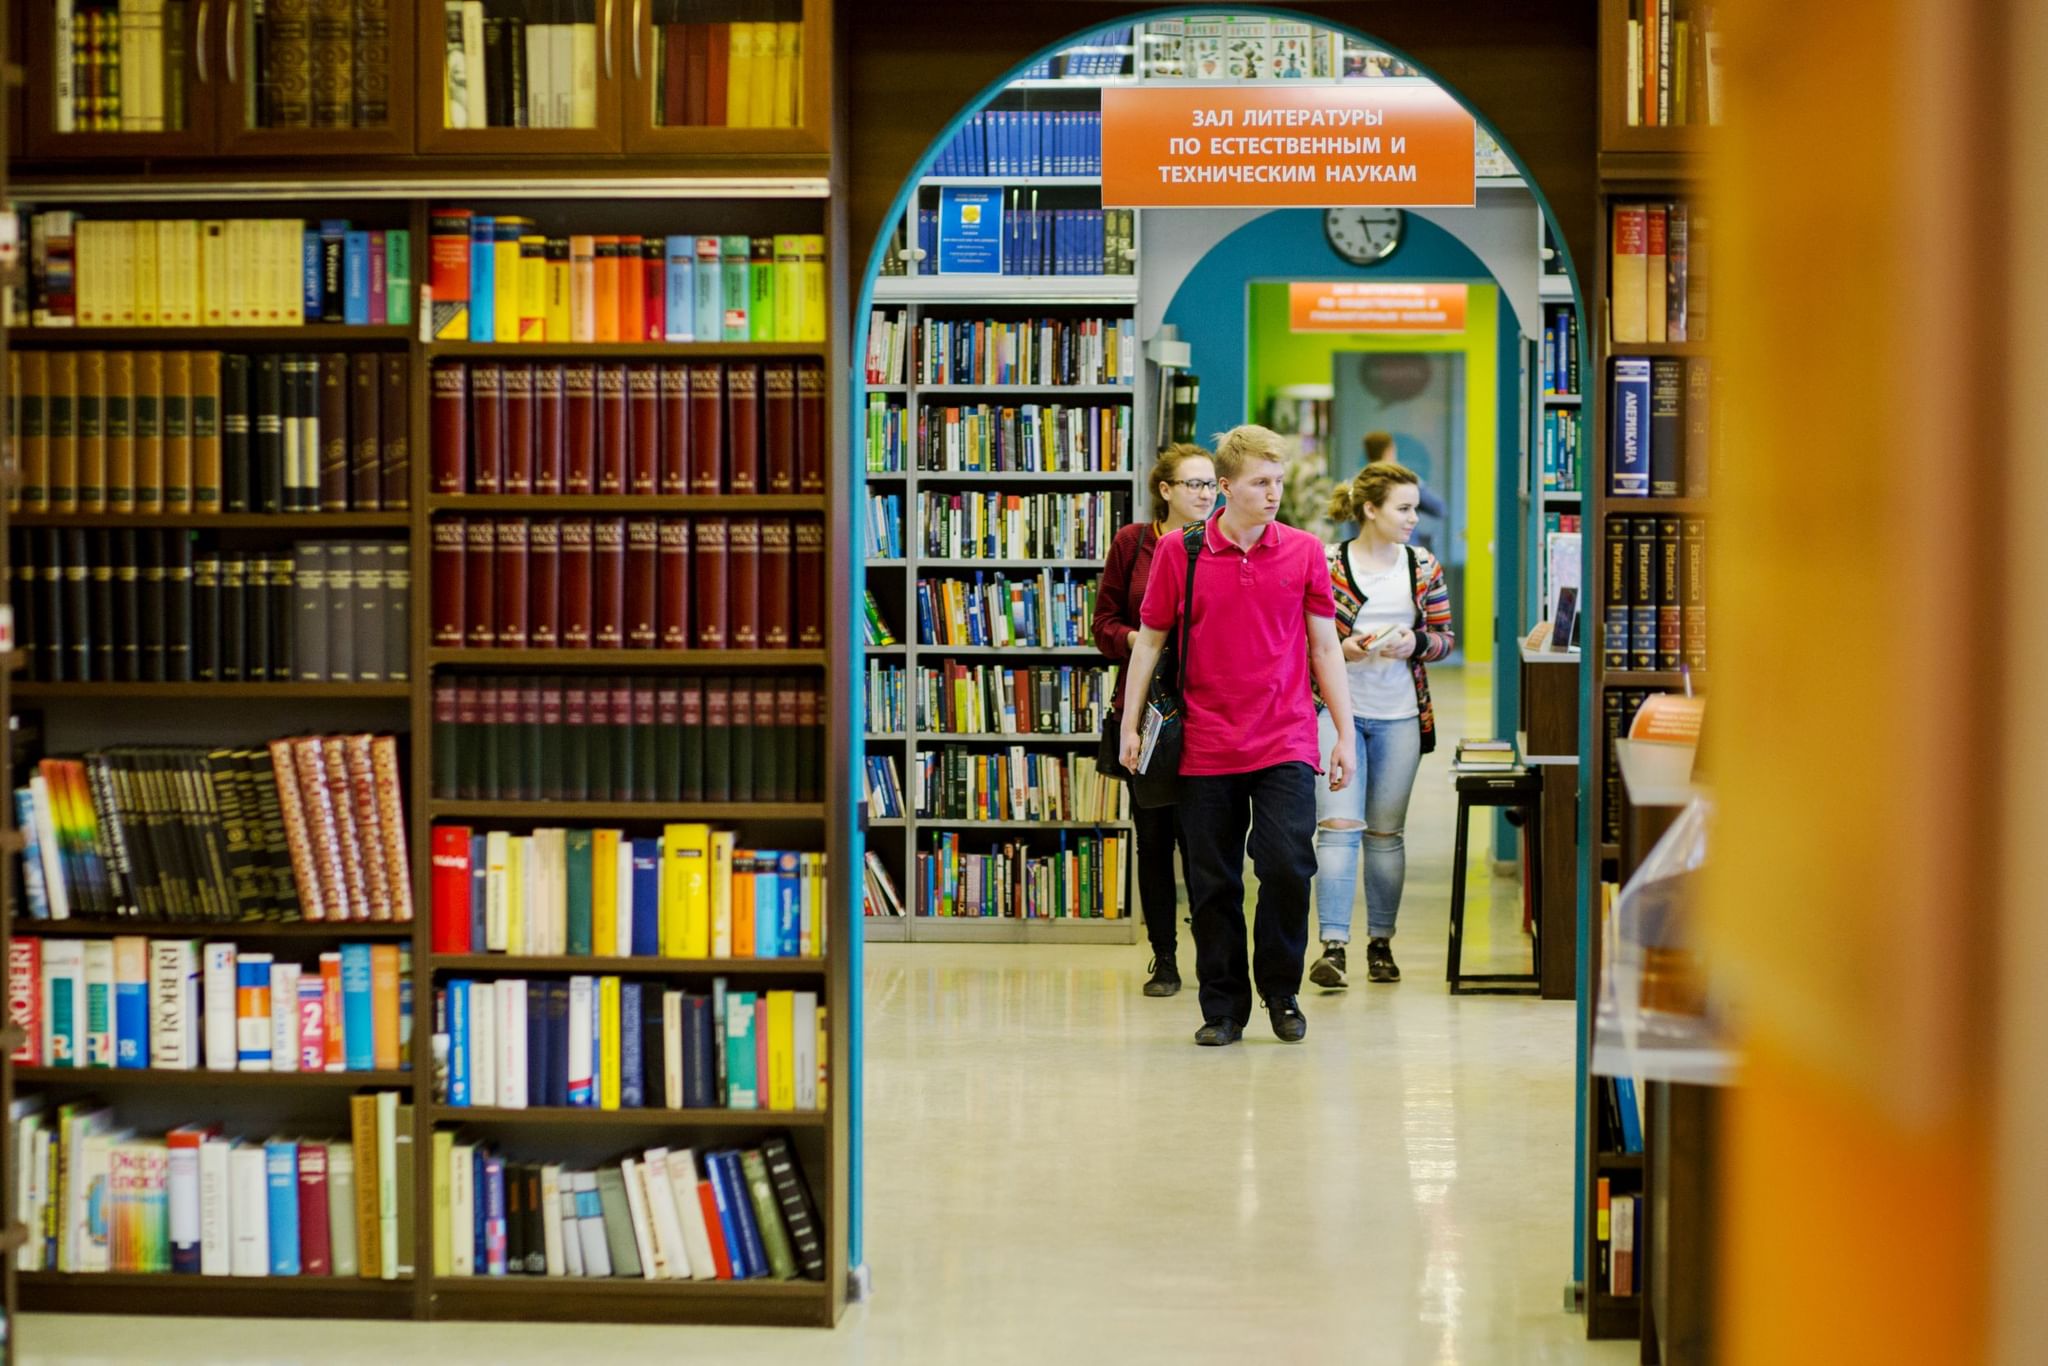 Библиотека ясенево. РГБМ библиотека для молодёжи. Евразийская библиотека в Уфе. Читатели в библиотеке. Современная библиотека.